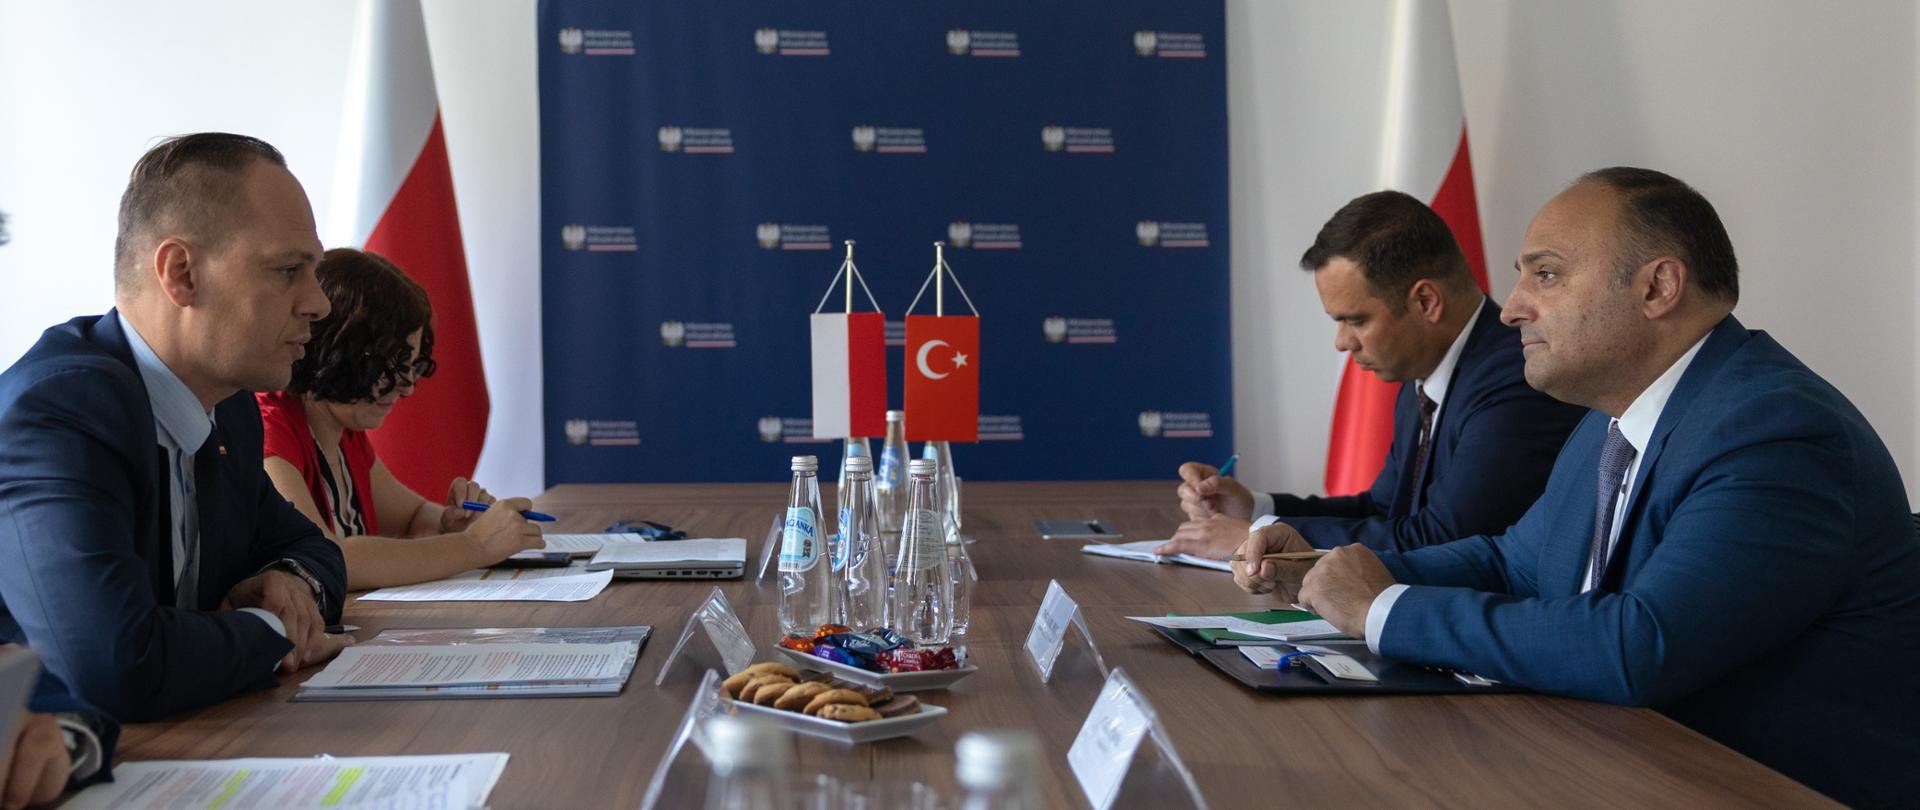 Współpraca polsko-turecka: doświadczenia i wyzwania